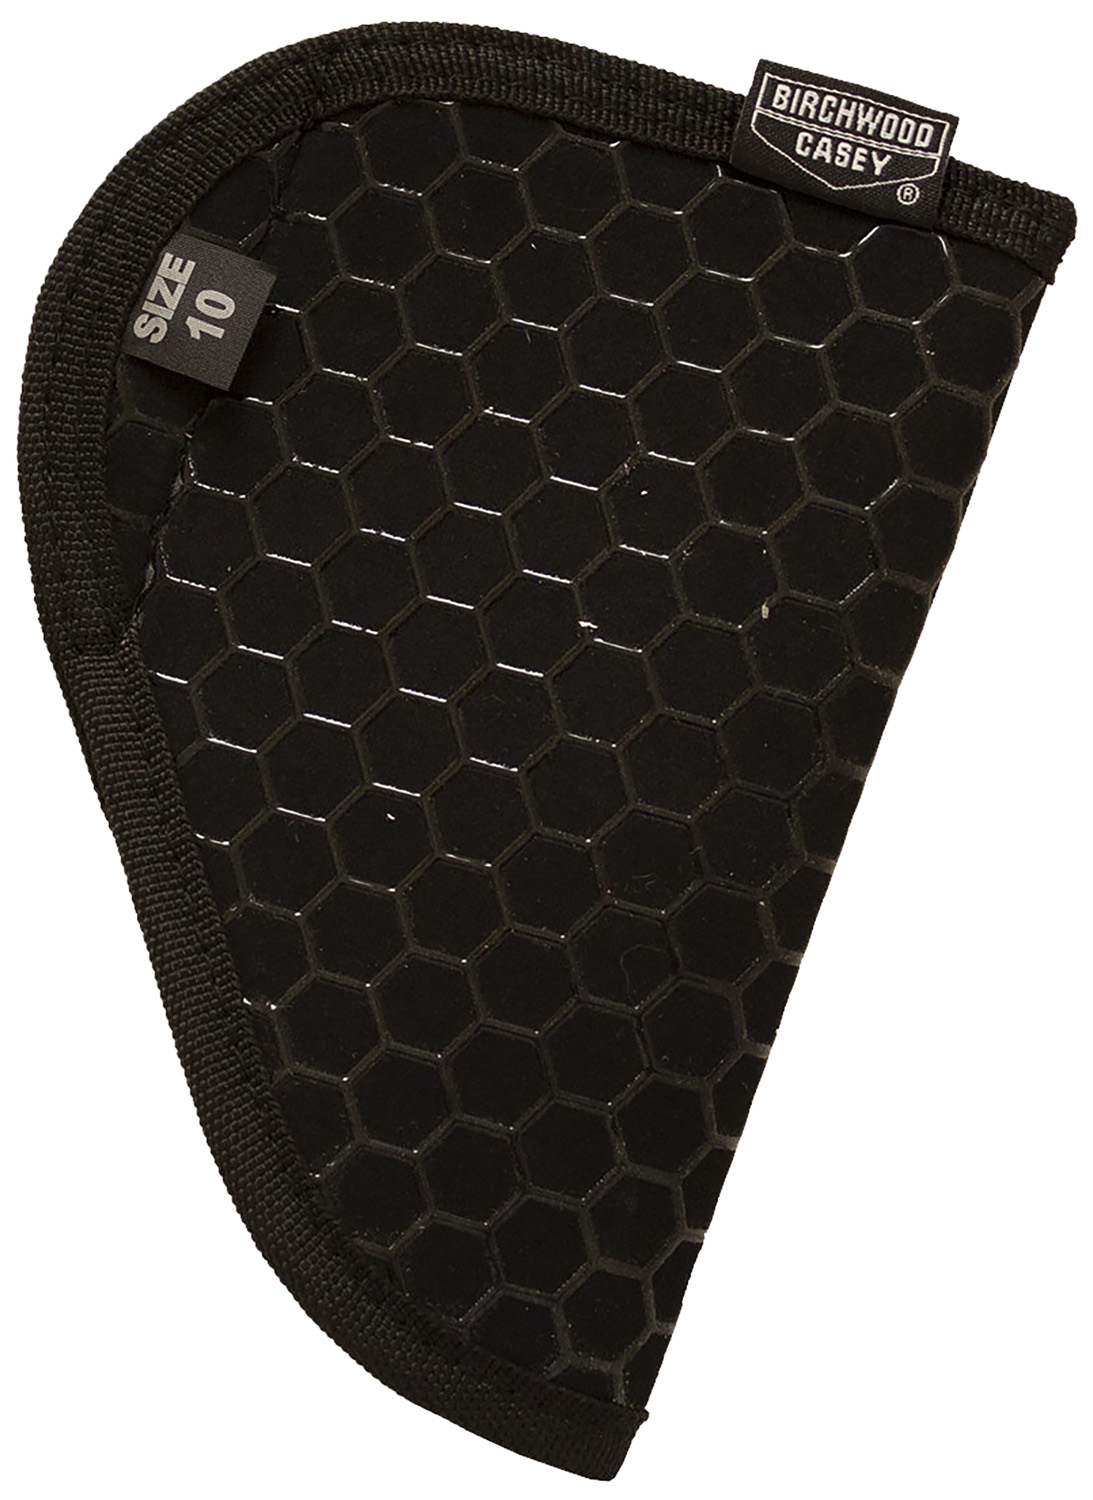 Birchwood Casey EH10 Epoxy Honeycomb Pocket Size 10 Black Nylon Fits S&W...-img-0